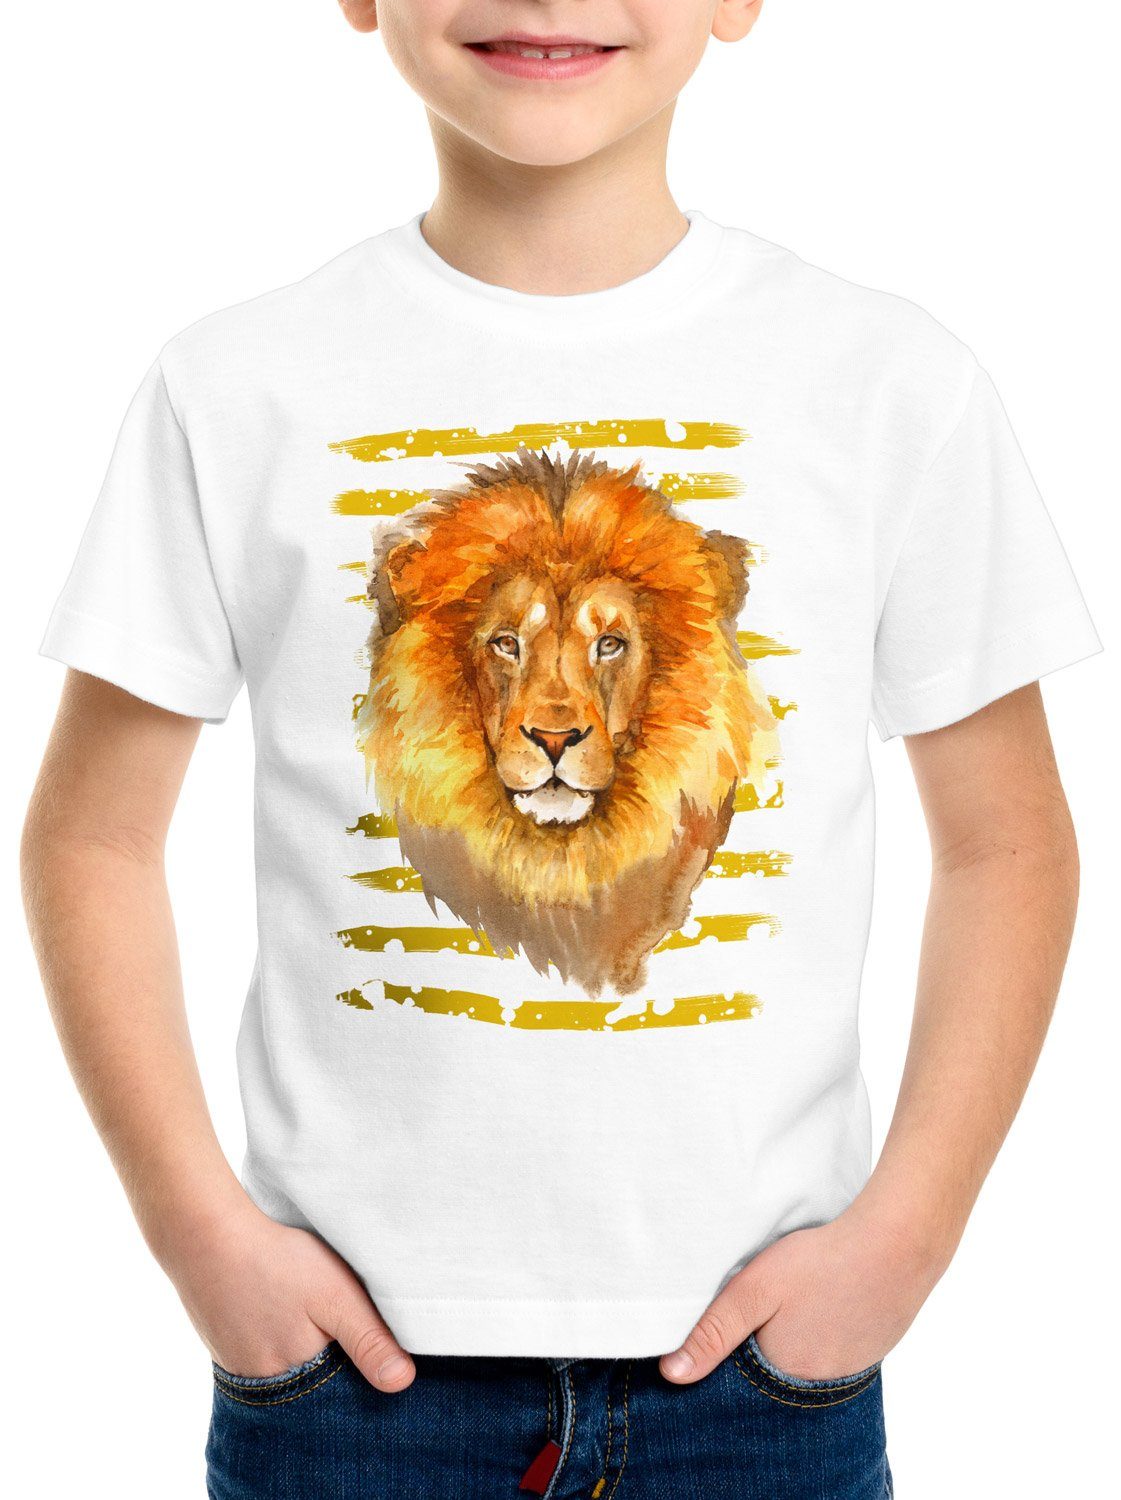 Print-Shirt safari afrika sommer Kinder style3 T-Shirt Löwe savanne